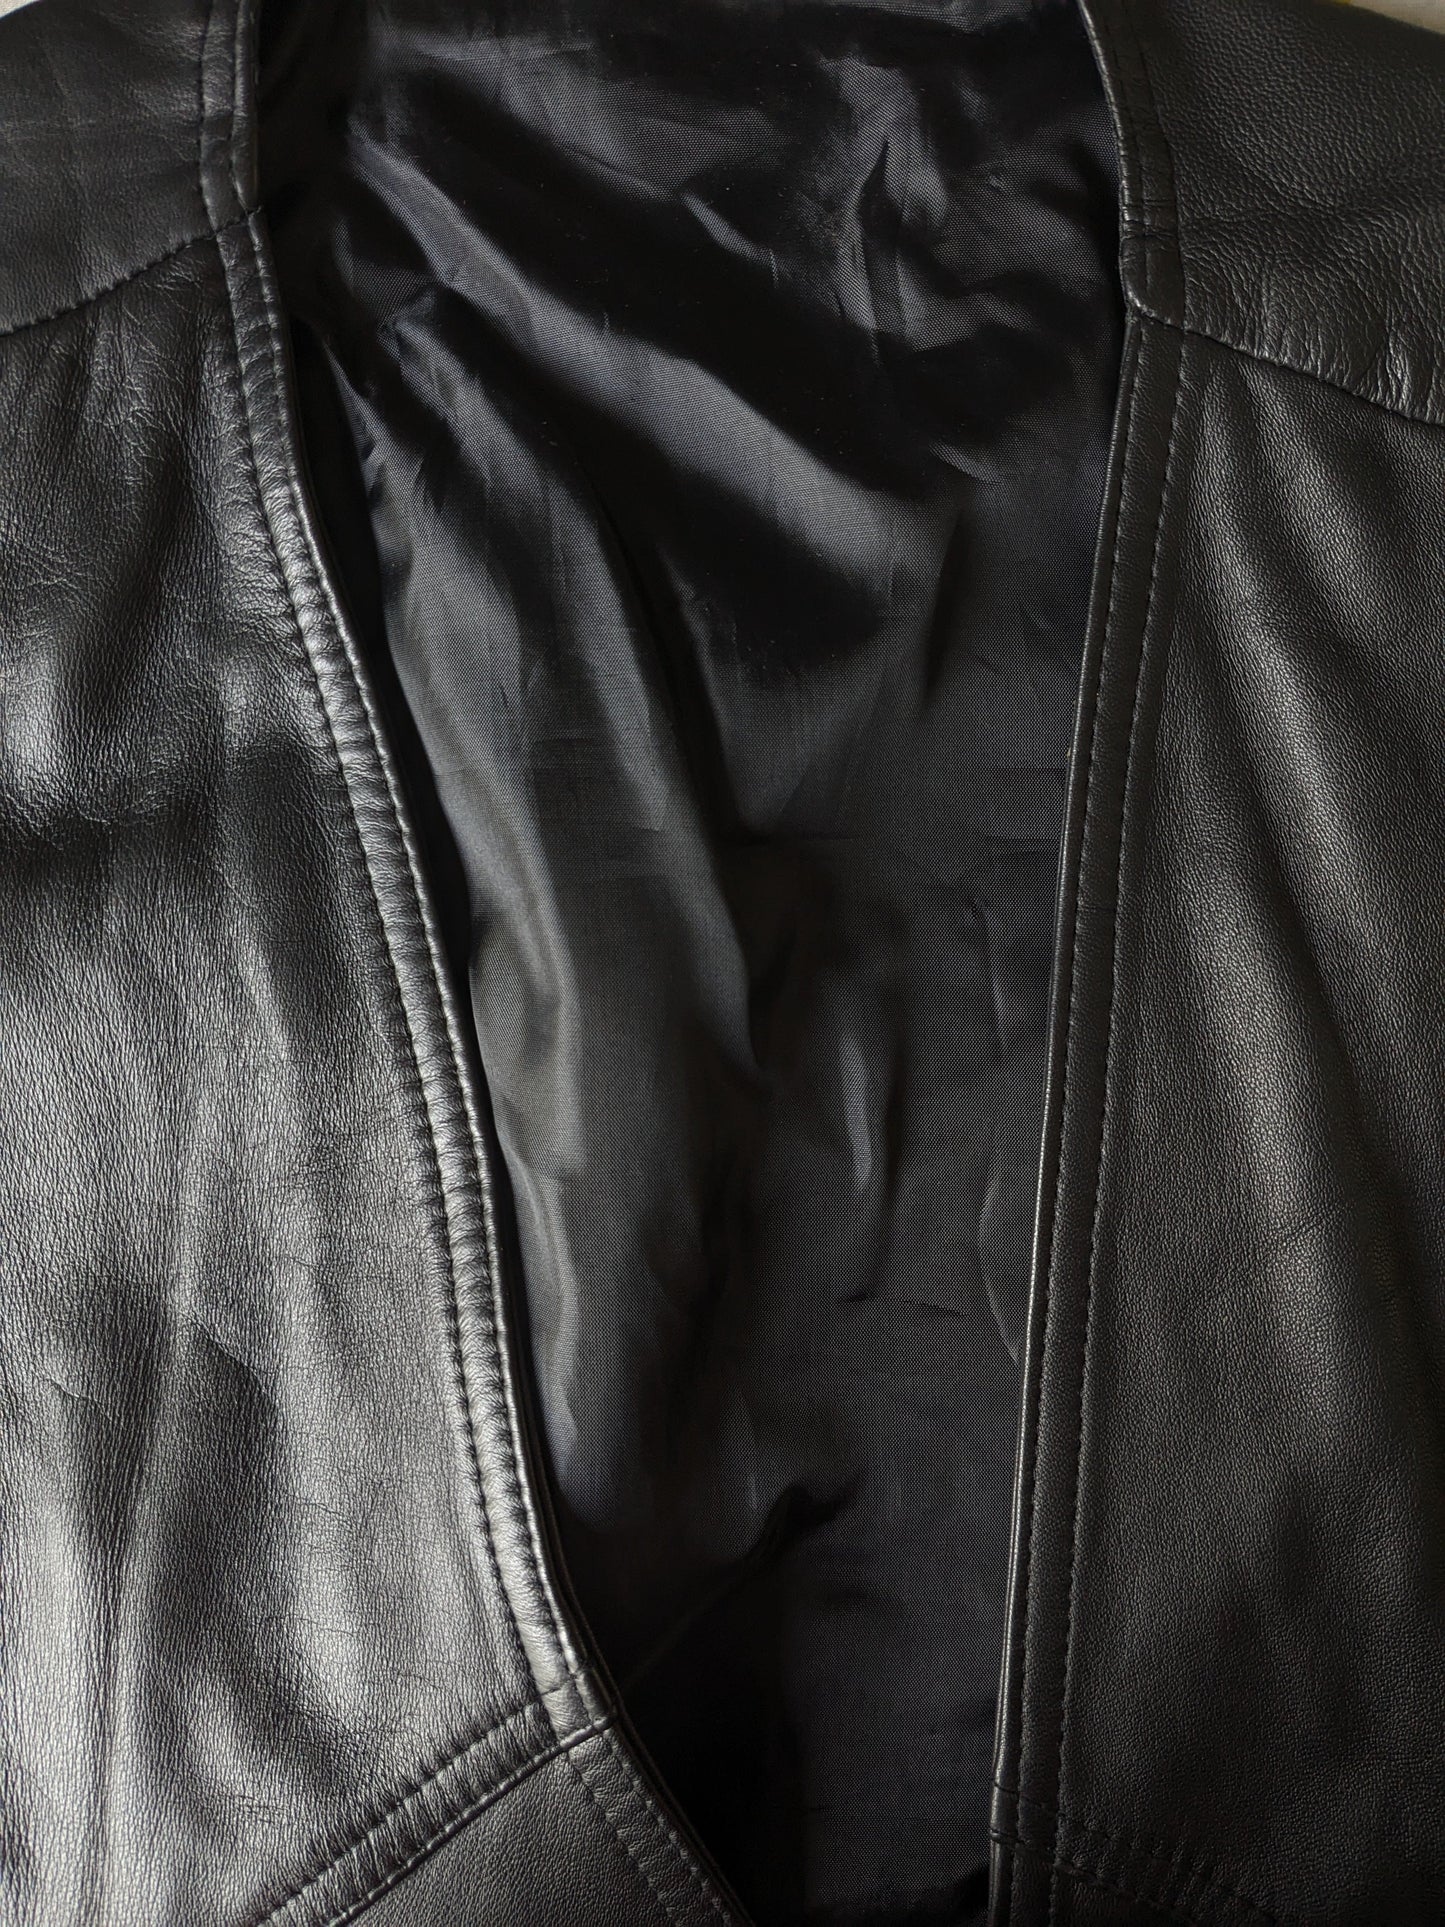 Chaleco de motociclista de cuero resistente con aplicaciones de encaje y hebillas. Color negro. Tamaño 3xl / xxxl.